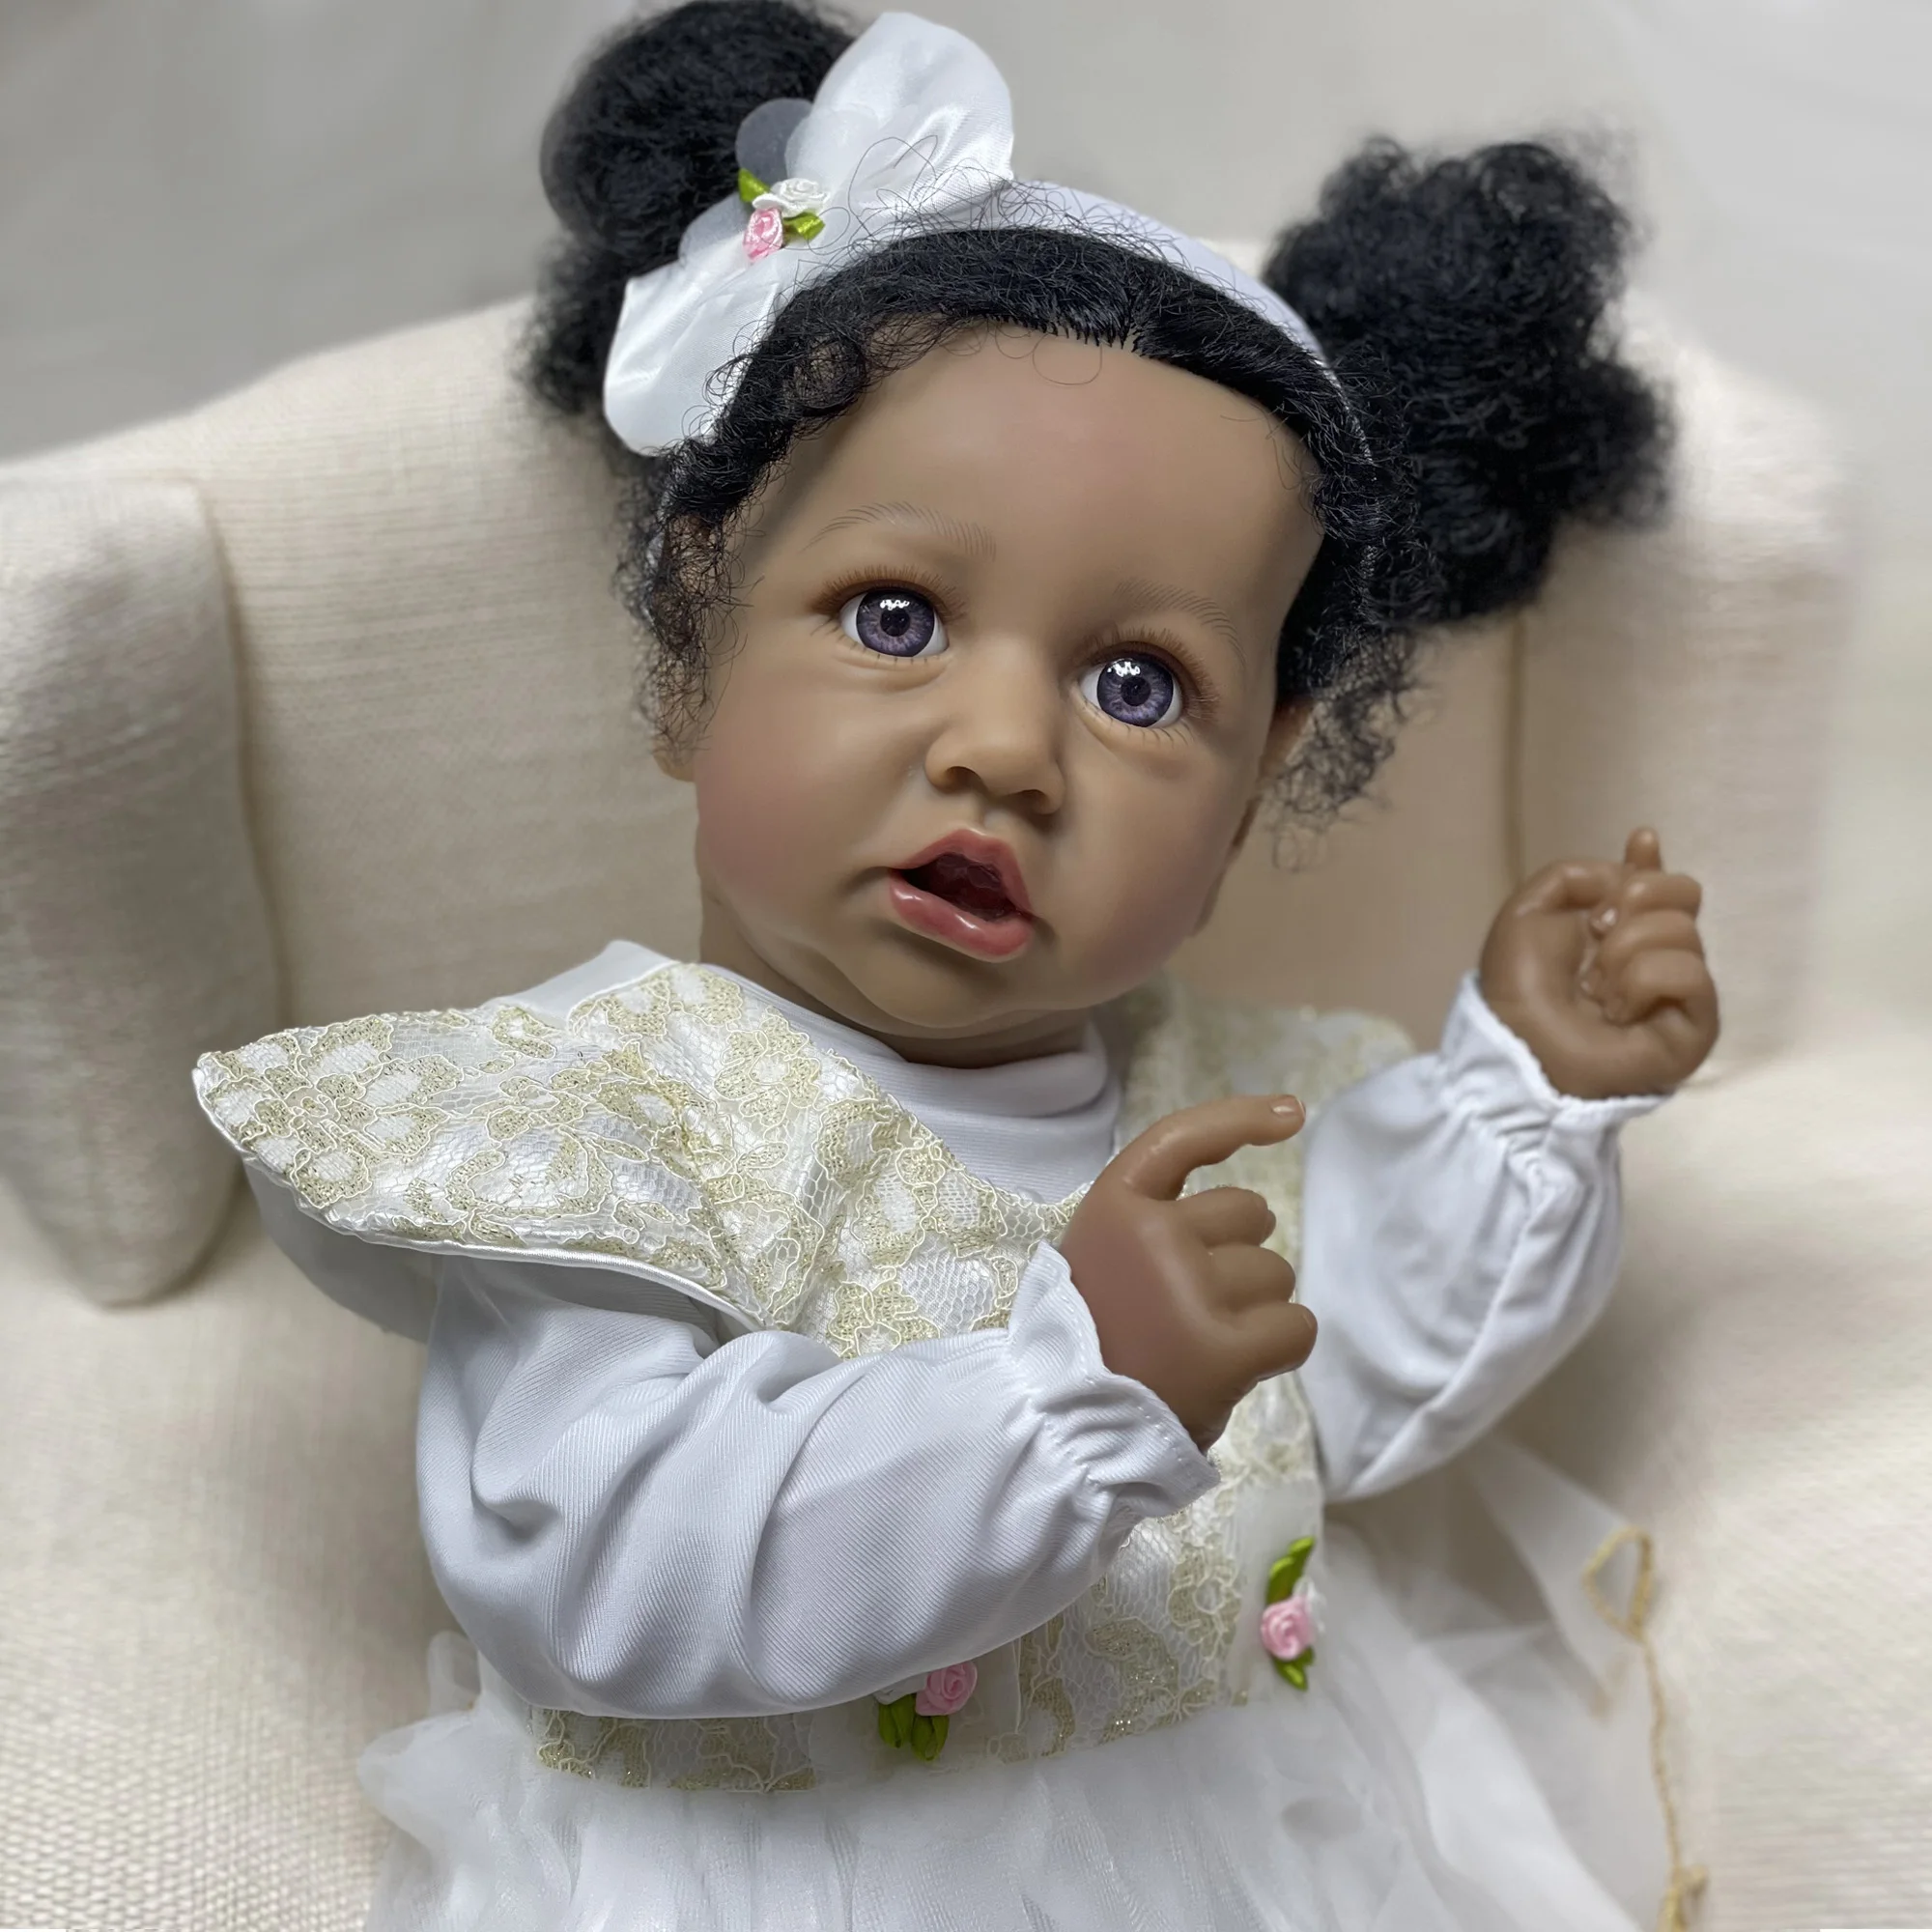 

Куклы Новорожденные 50 см, Pеборн, кукла-младенец, игрушки для девочек, кукла-младенец новорожденный, с черными волосами и белым платьем для девочек